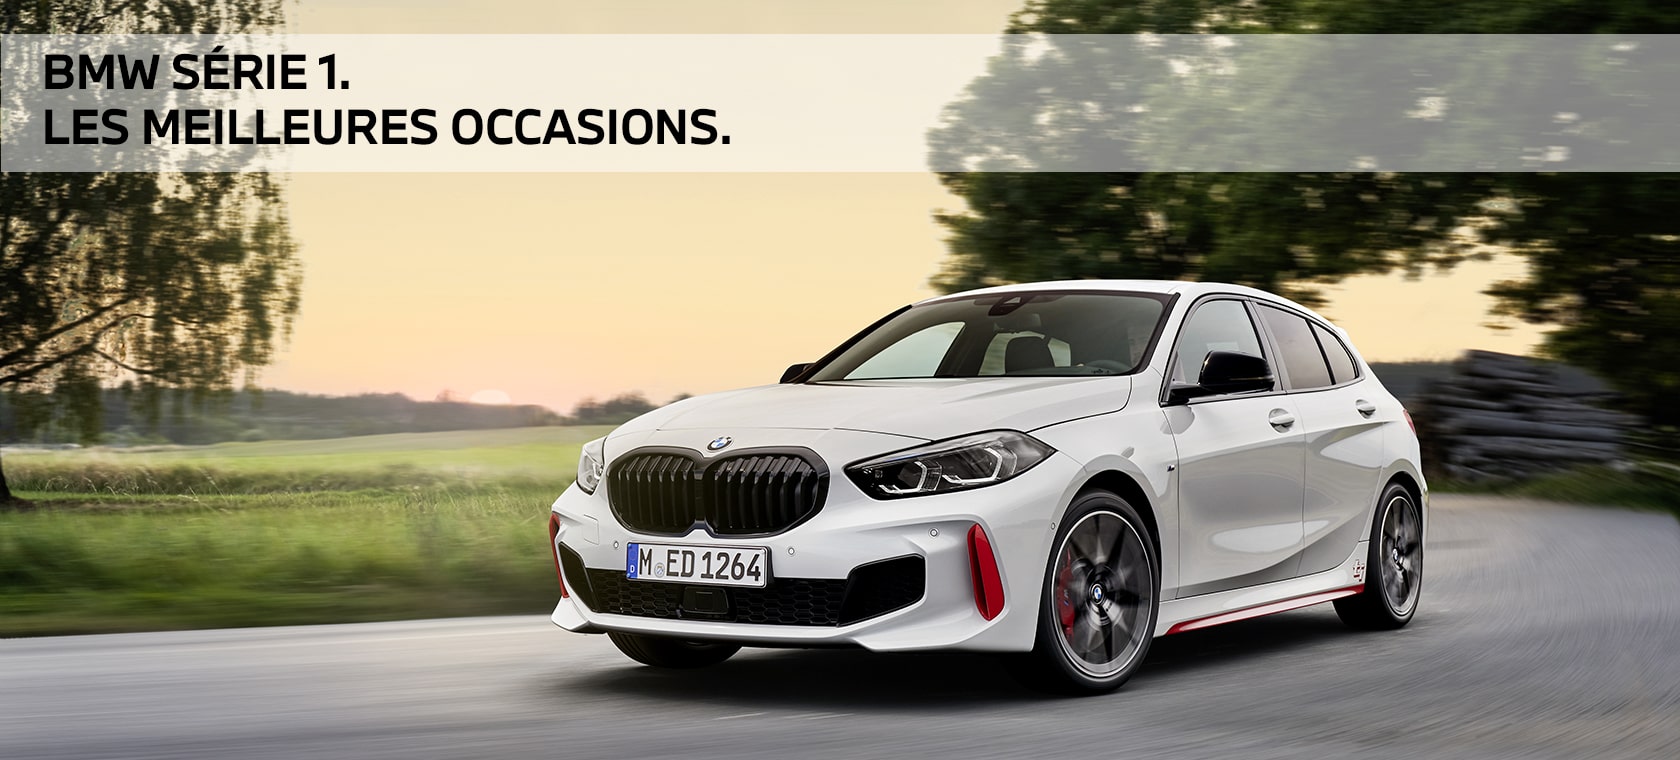 BMW série 1 occasion